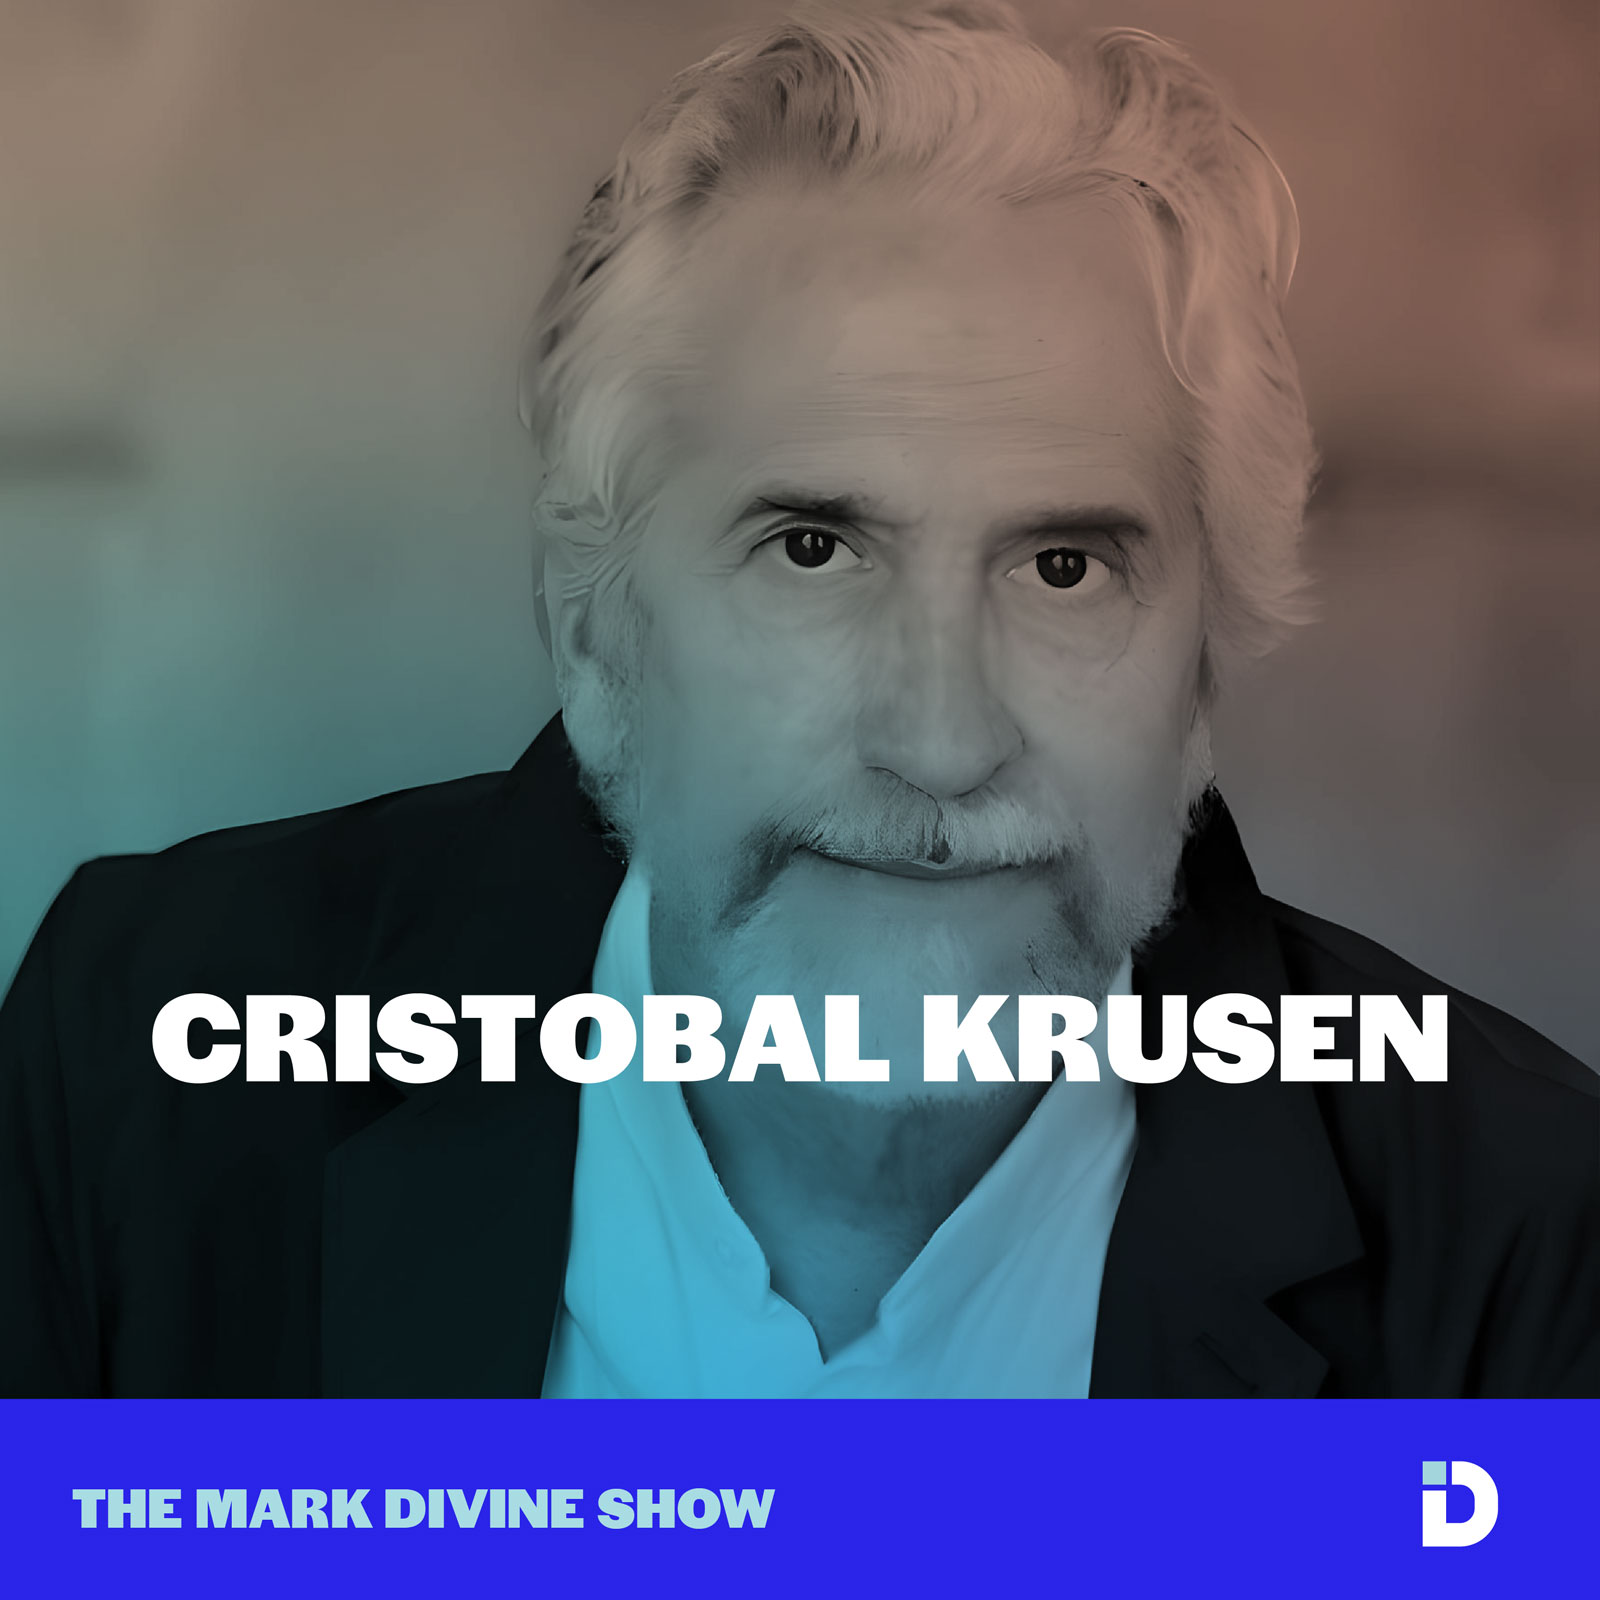 Cristobal Krusen